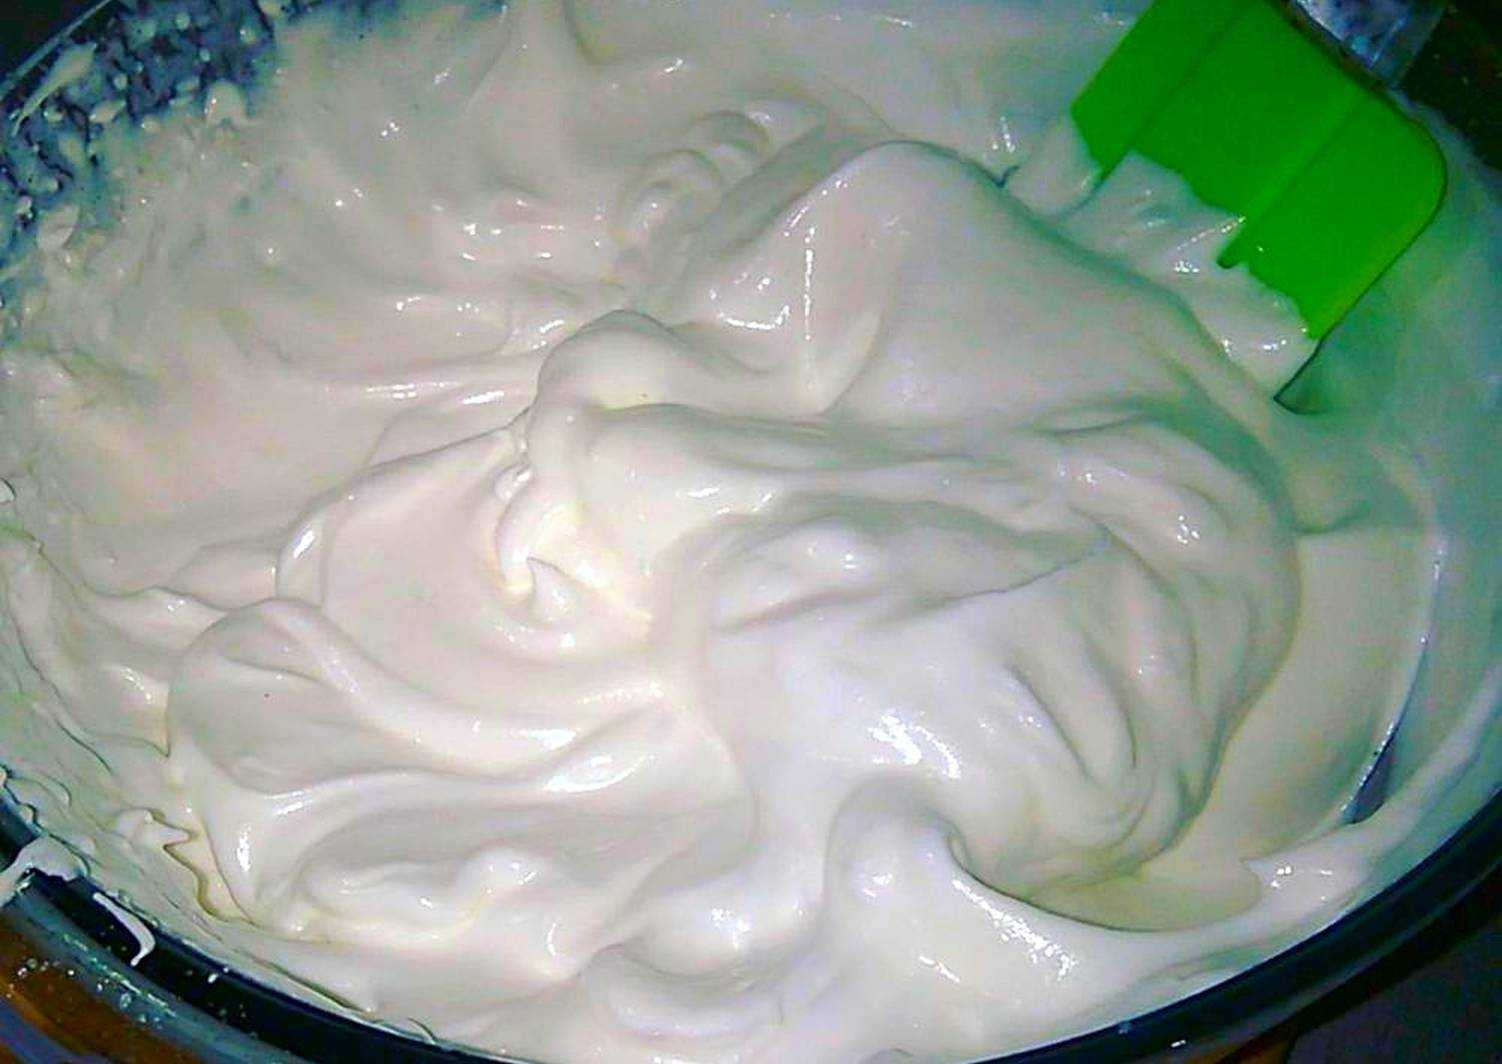 Как приготовить крем для украшения торта  9 простых проверенных рецептов крема для оформления торта с пошаговыми фото По этим рецептам вы легко сделаете крем в домашних условиях